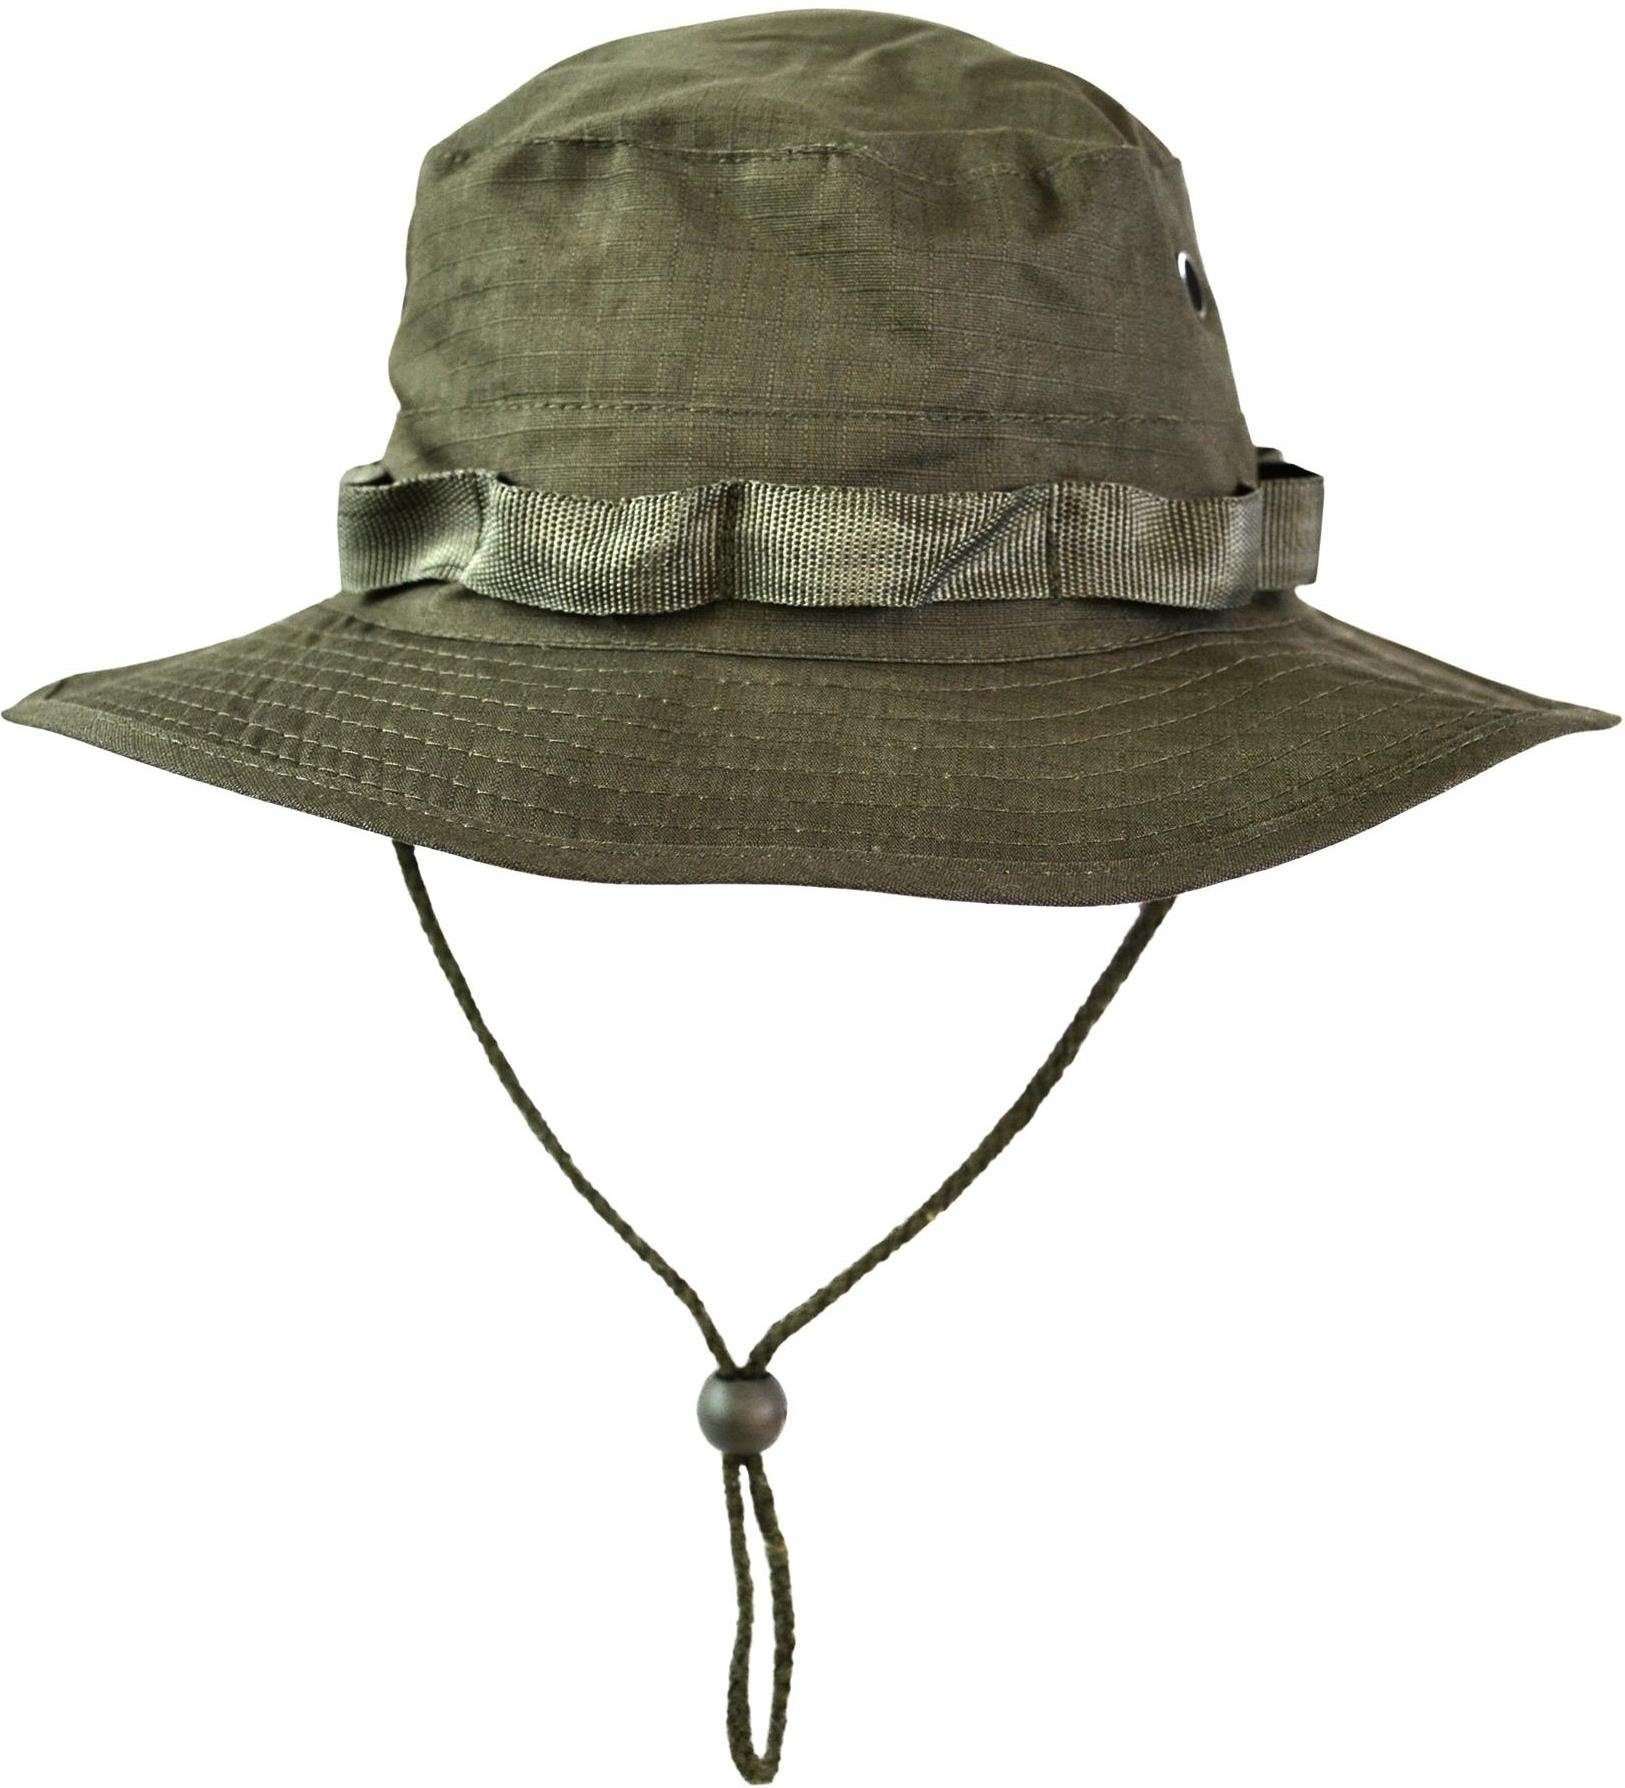 normani Outdoorhut Boonie Hat Oliv Army Safari Hut Boondock Sommenschutzhut Buschhut Mütze Sonnenhut